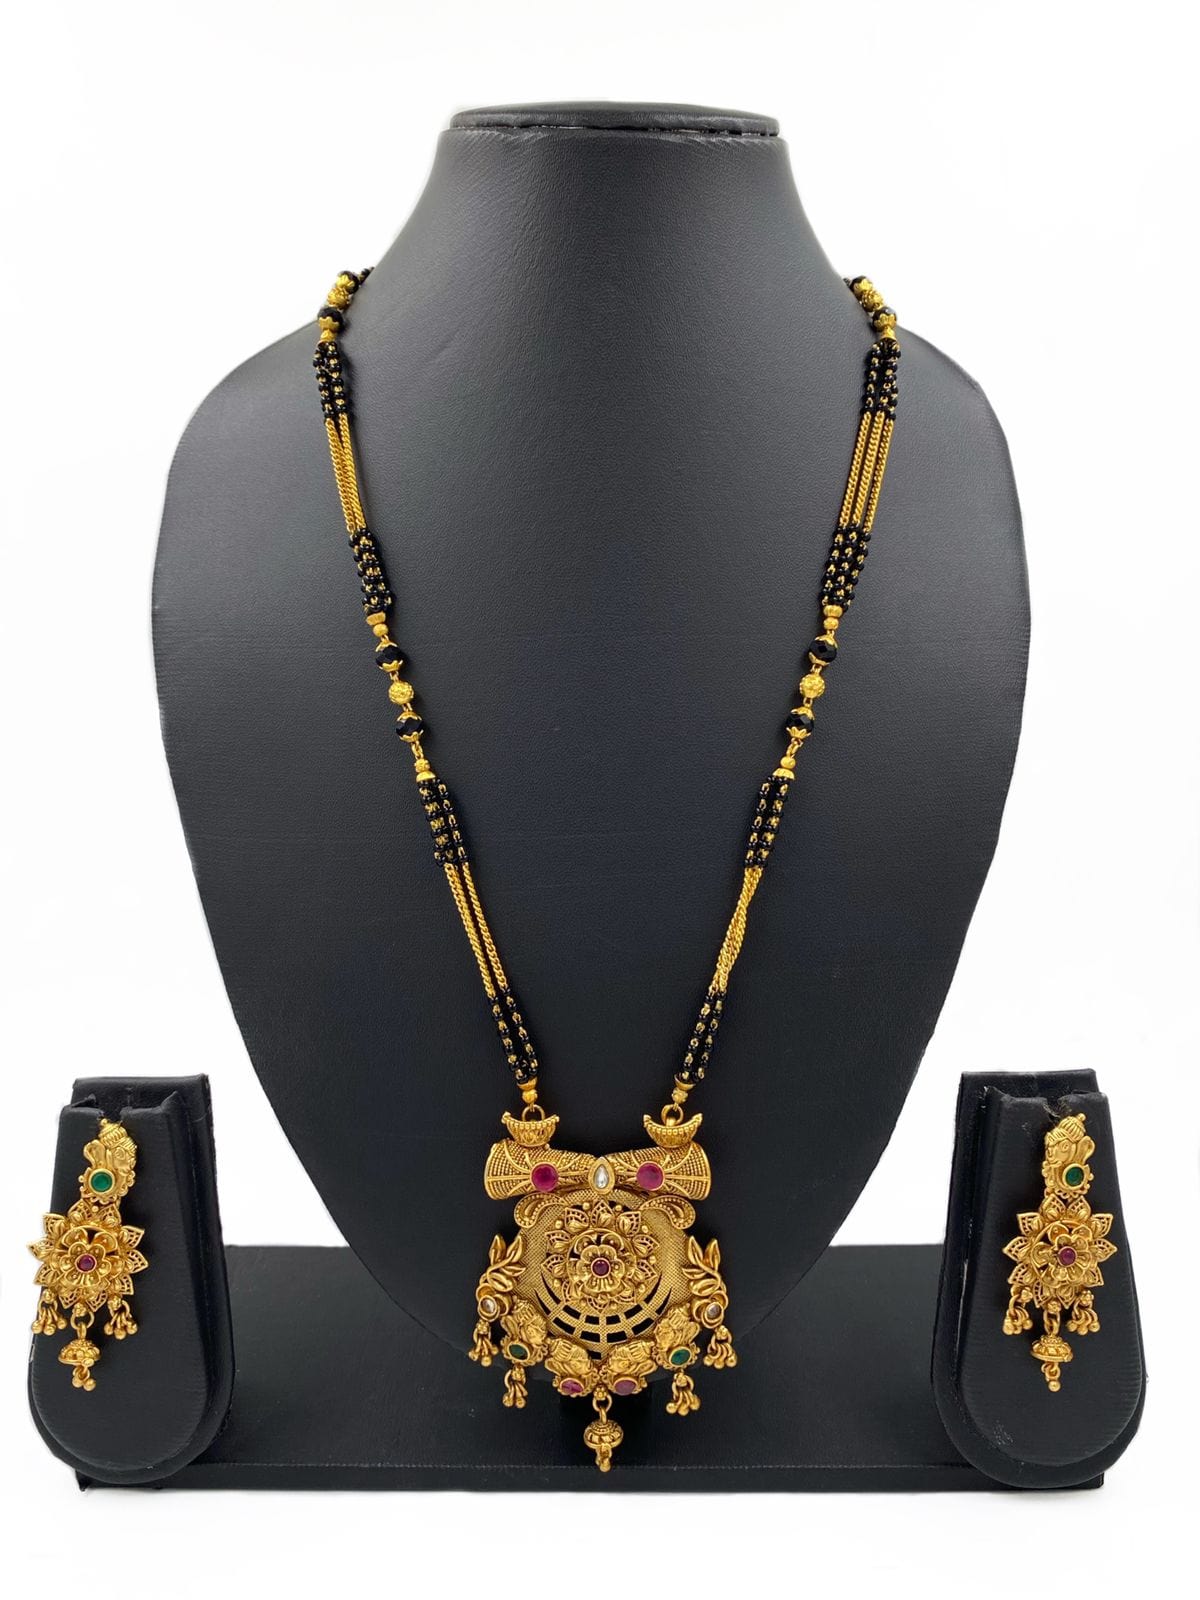 Exclusive Matt Finish Golden Mangalsutra Necklace Set For Women By Gehna Shop Mangalsutras